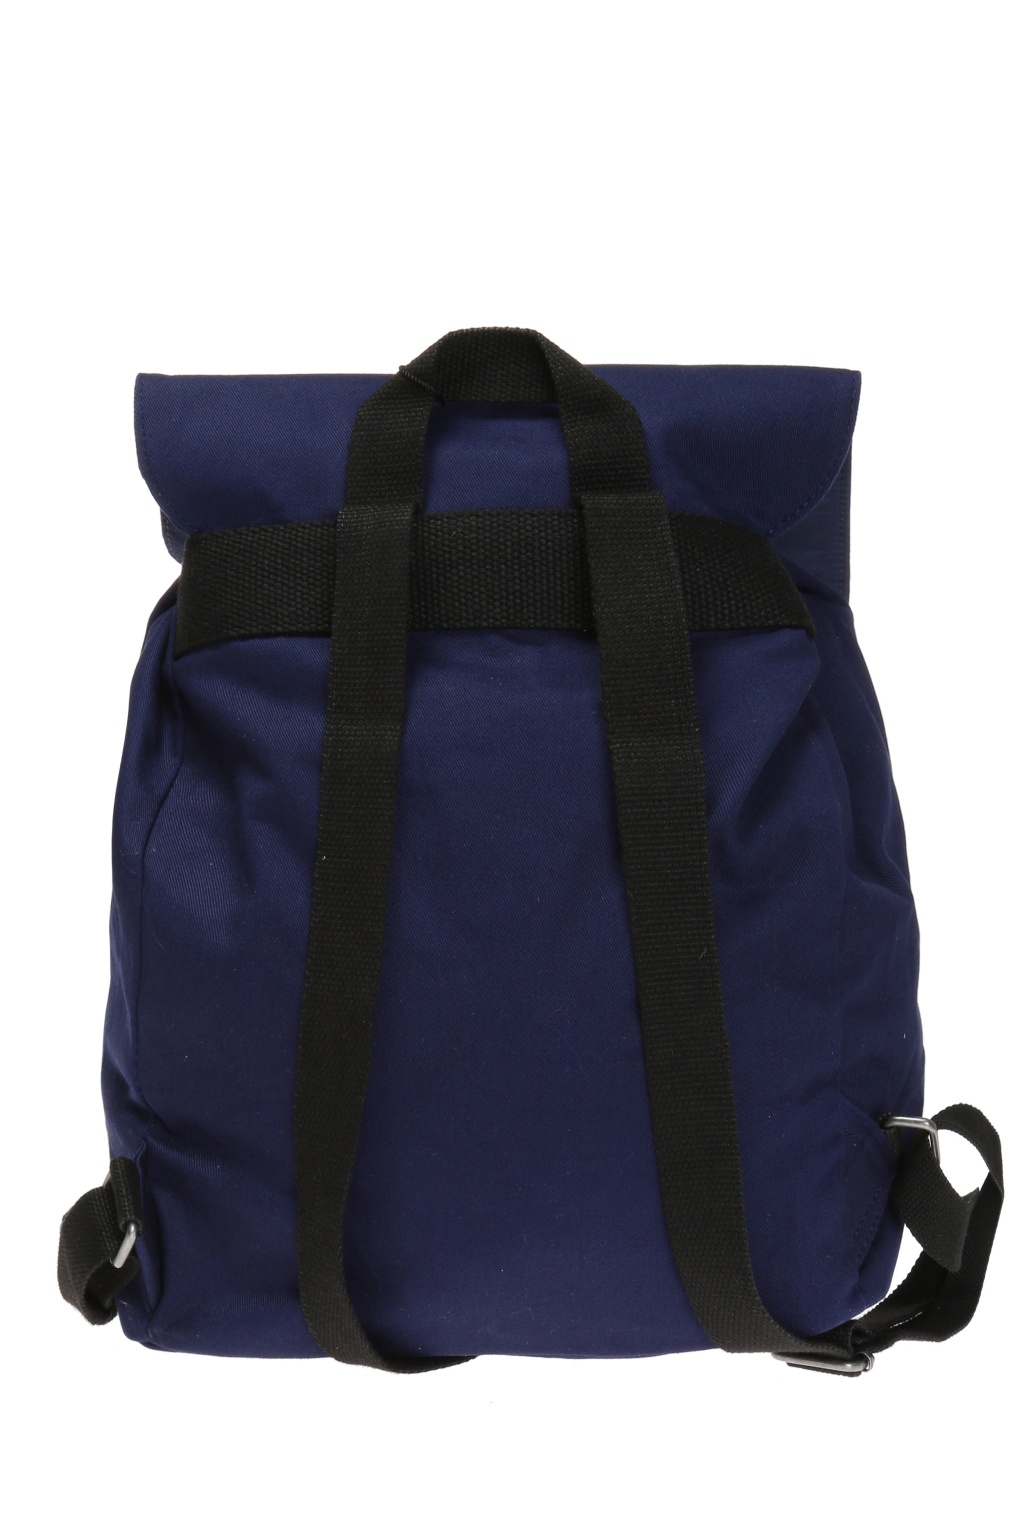 kenzo kids backpack